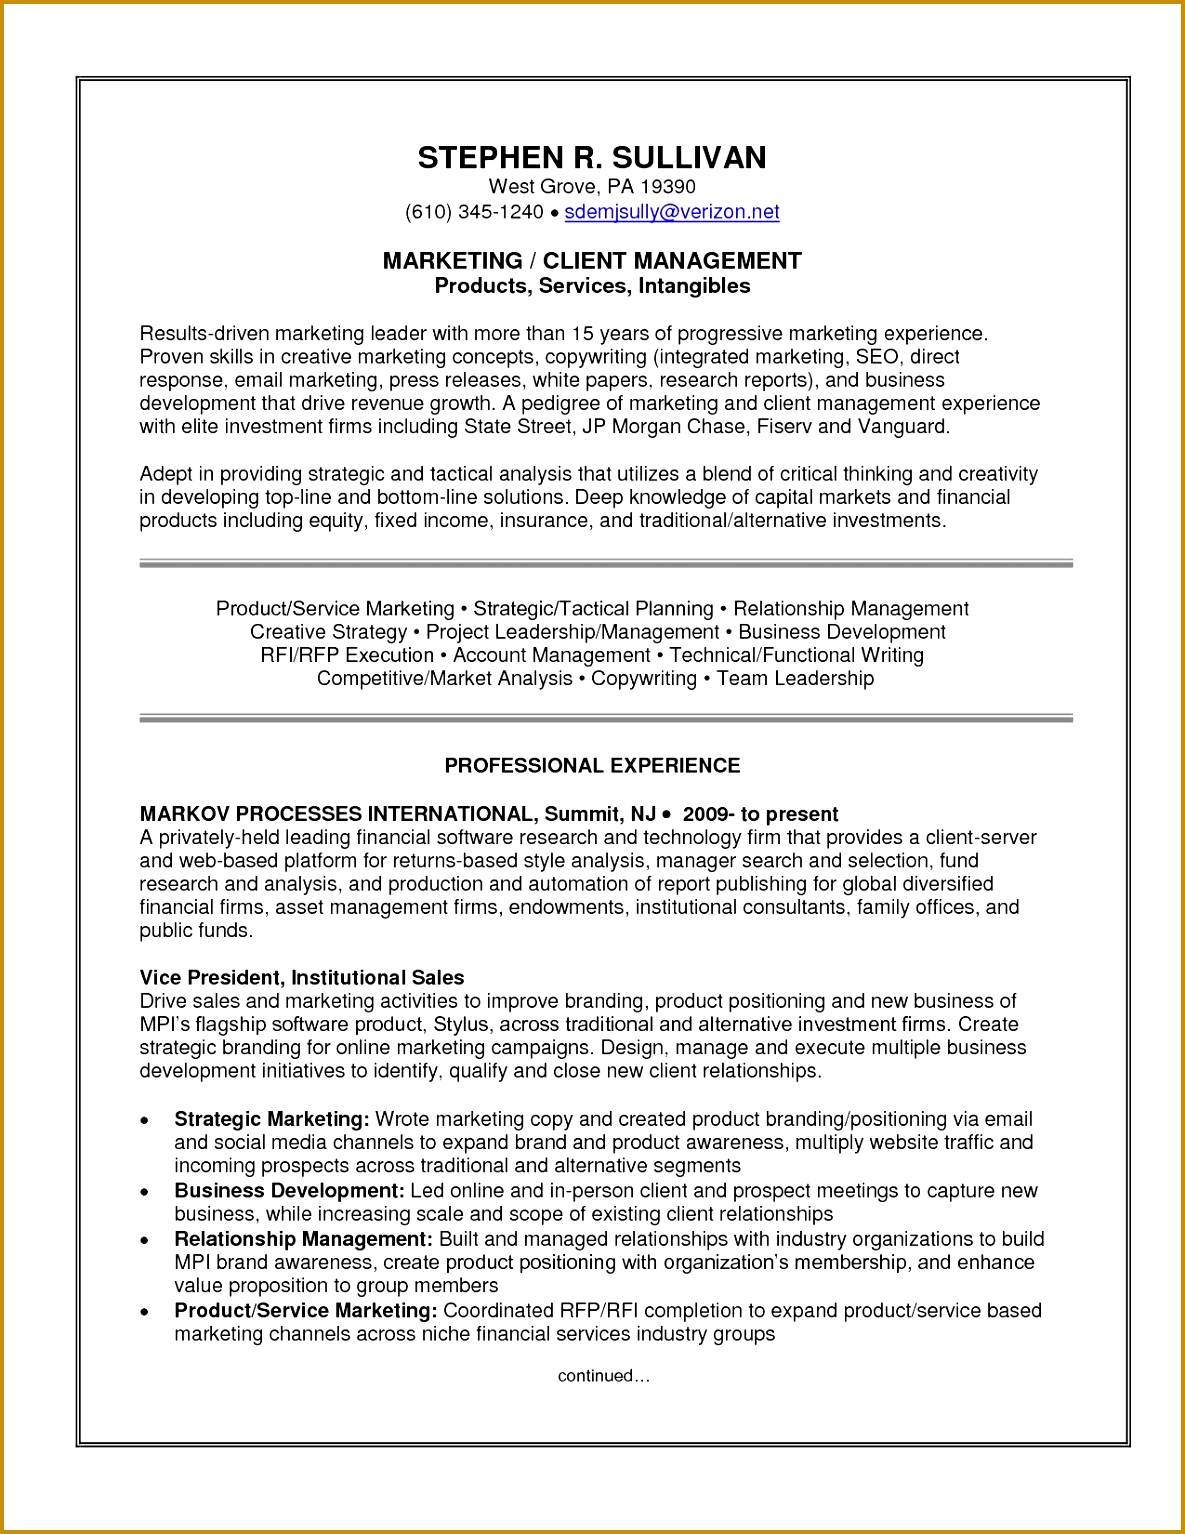 Resume Cover Letter Service Lovely Application for Employment California Template Elegant Programmer 15341185